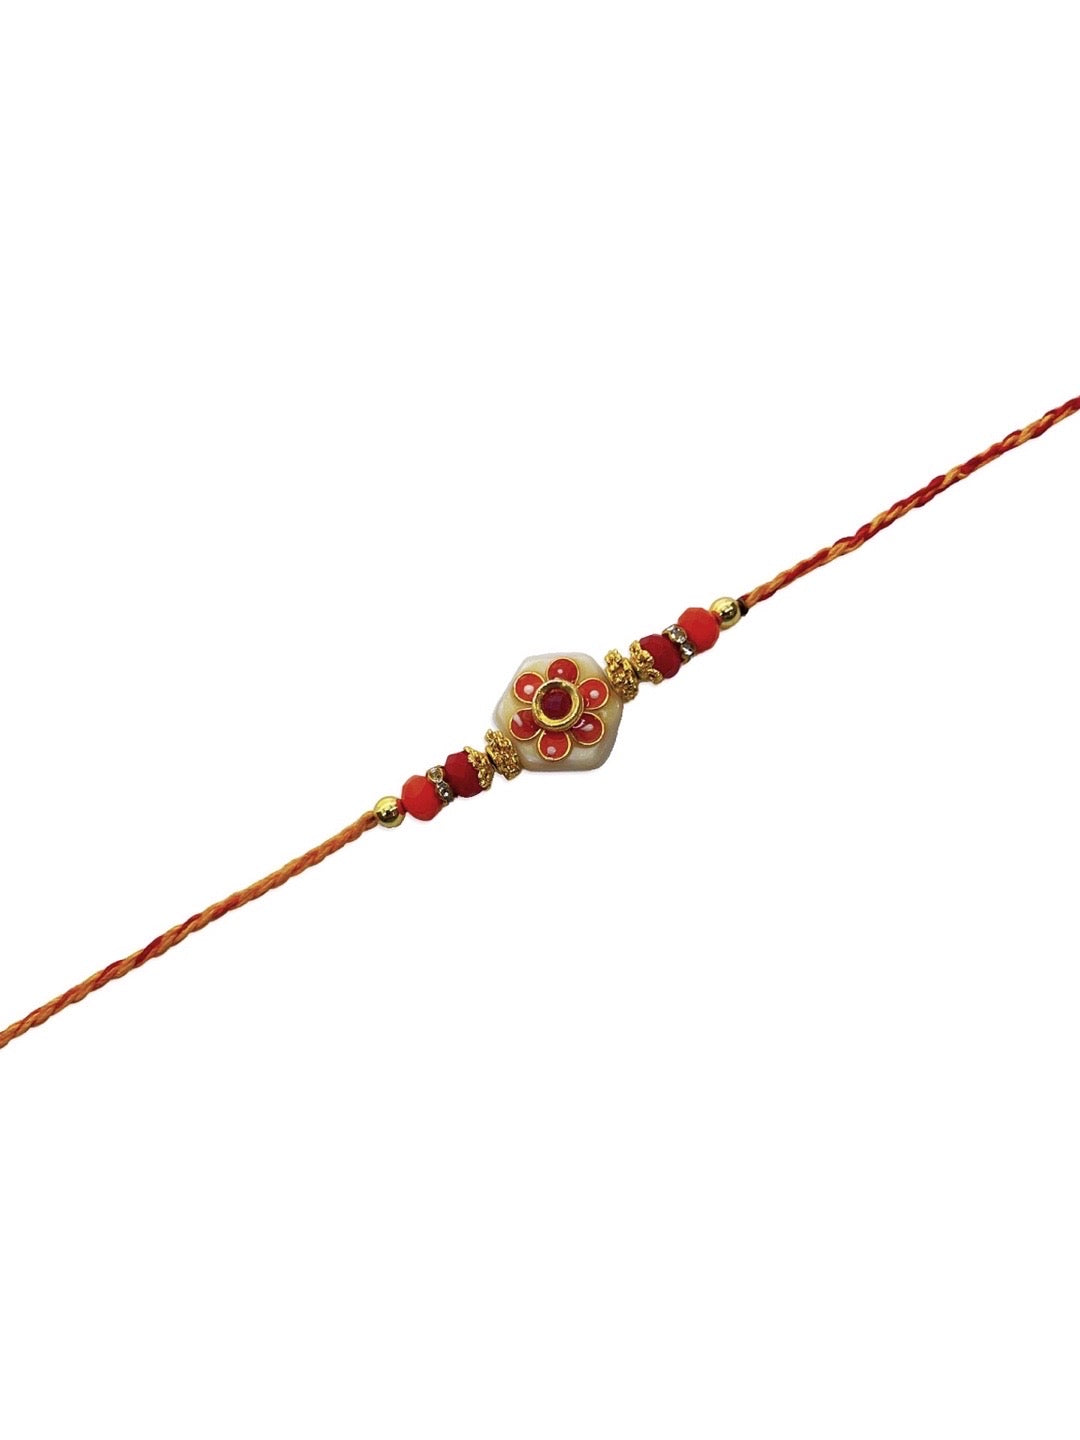 Kundan Beautiful Designer Rakhi Flower Designs With Beads Red Thread Rakhi For Raksha Bandhan